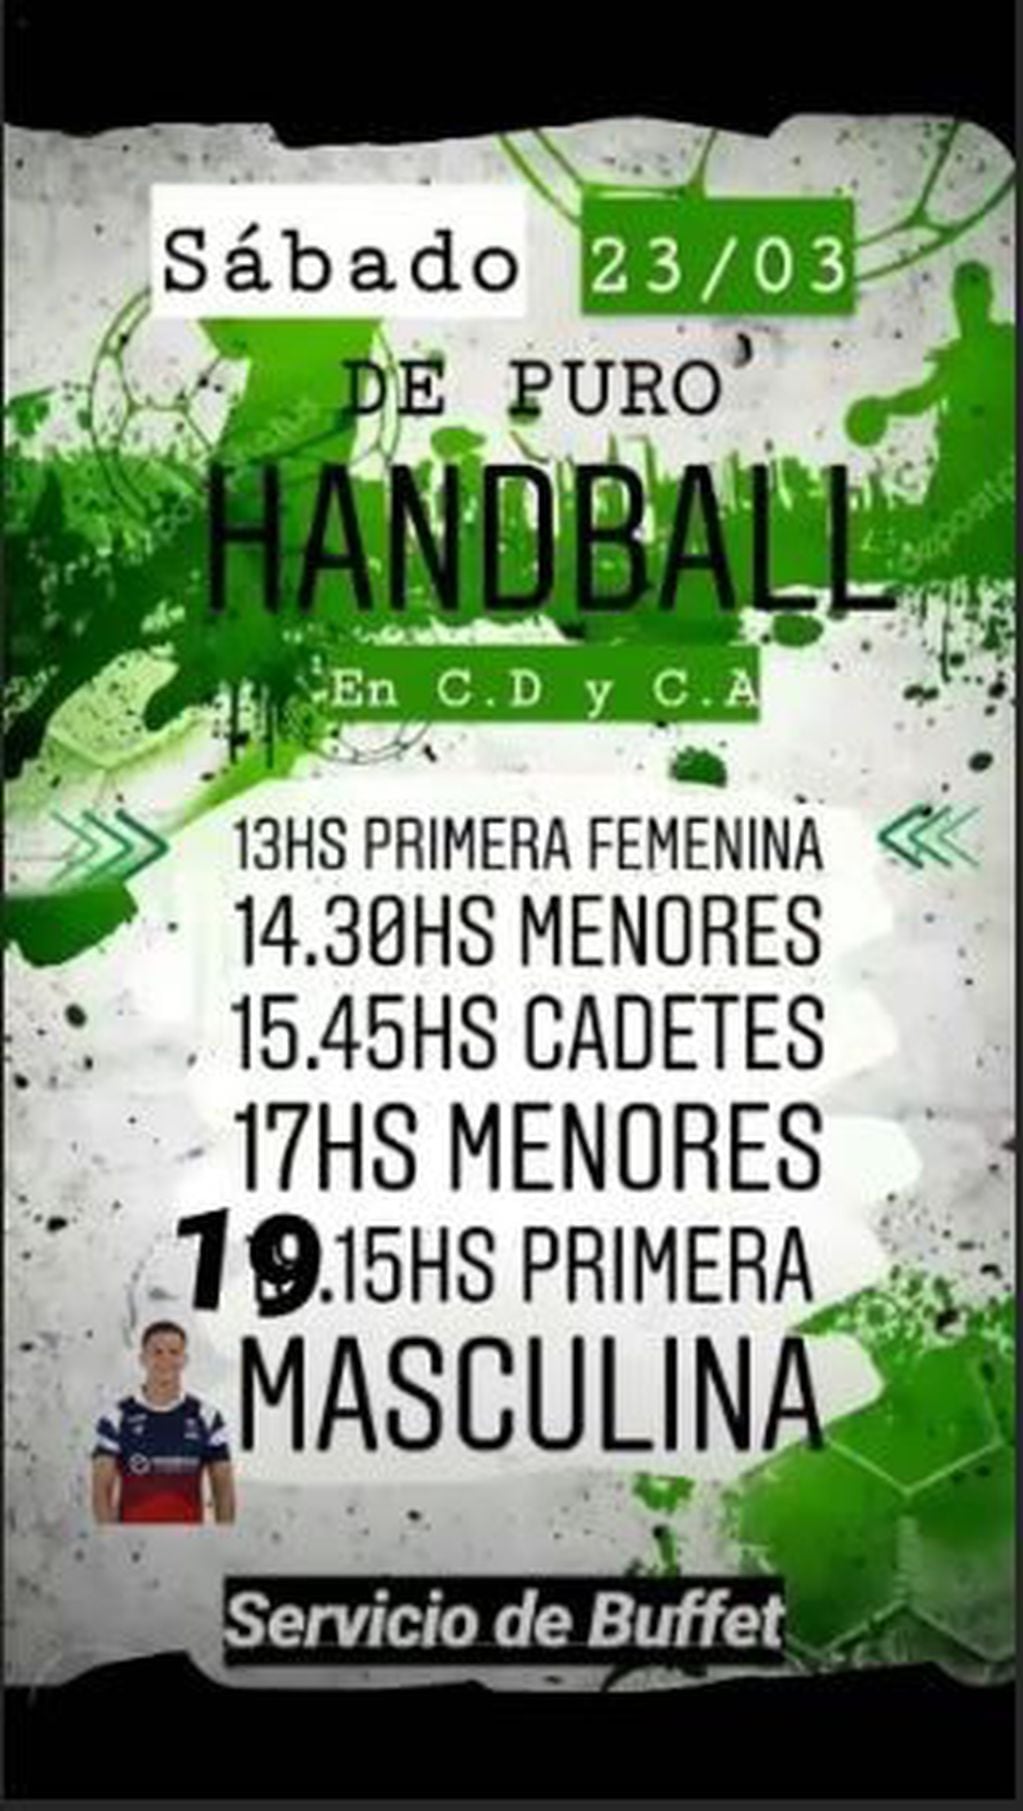 Handball Club Deportivo y Cultural Arroyito